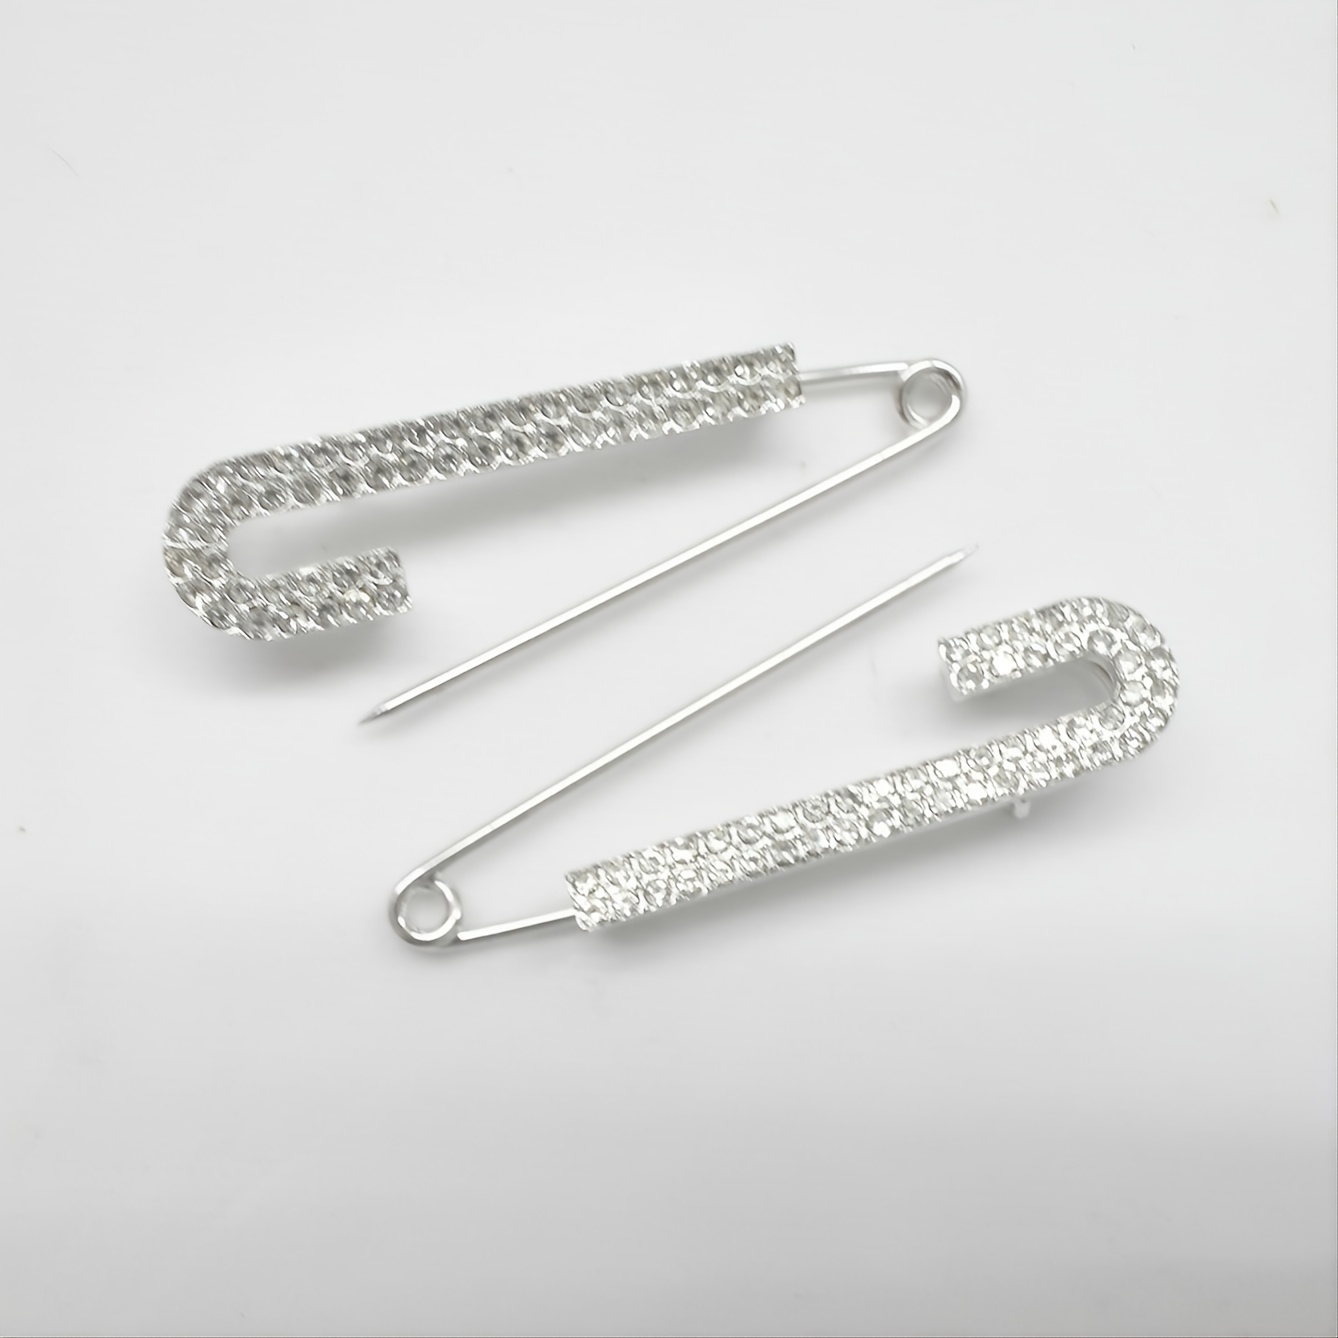 Black Safety Pins Dangle Earrings 925 Sterling Silver Fancy Jewelry 